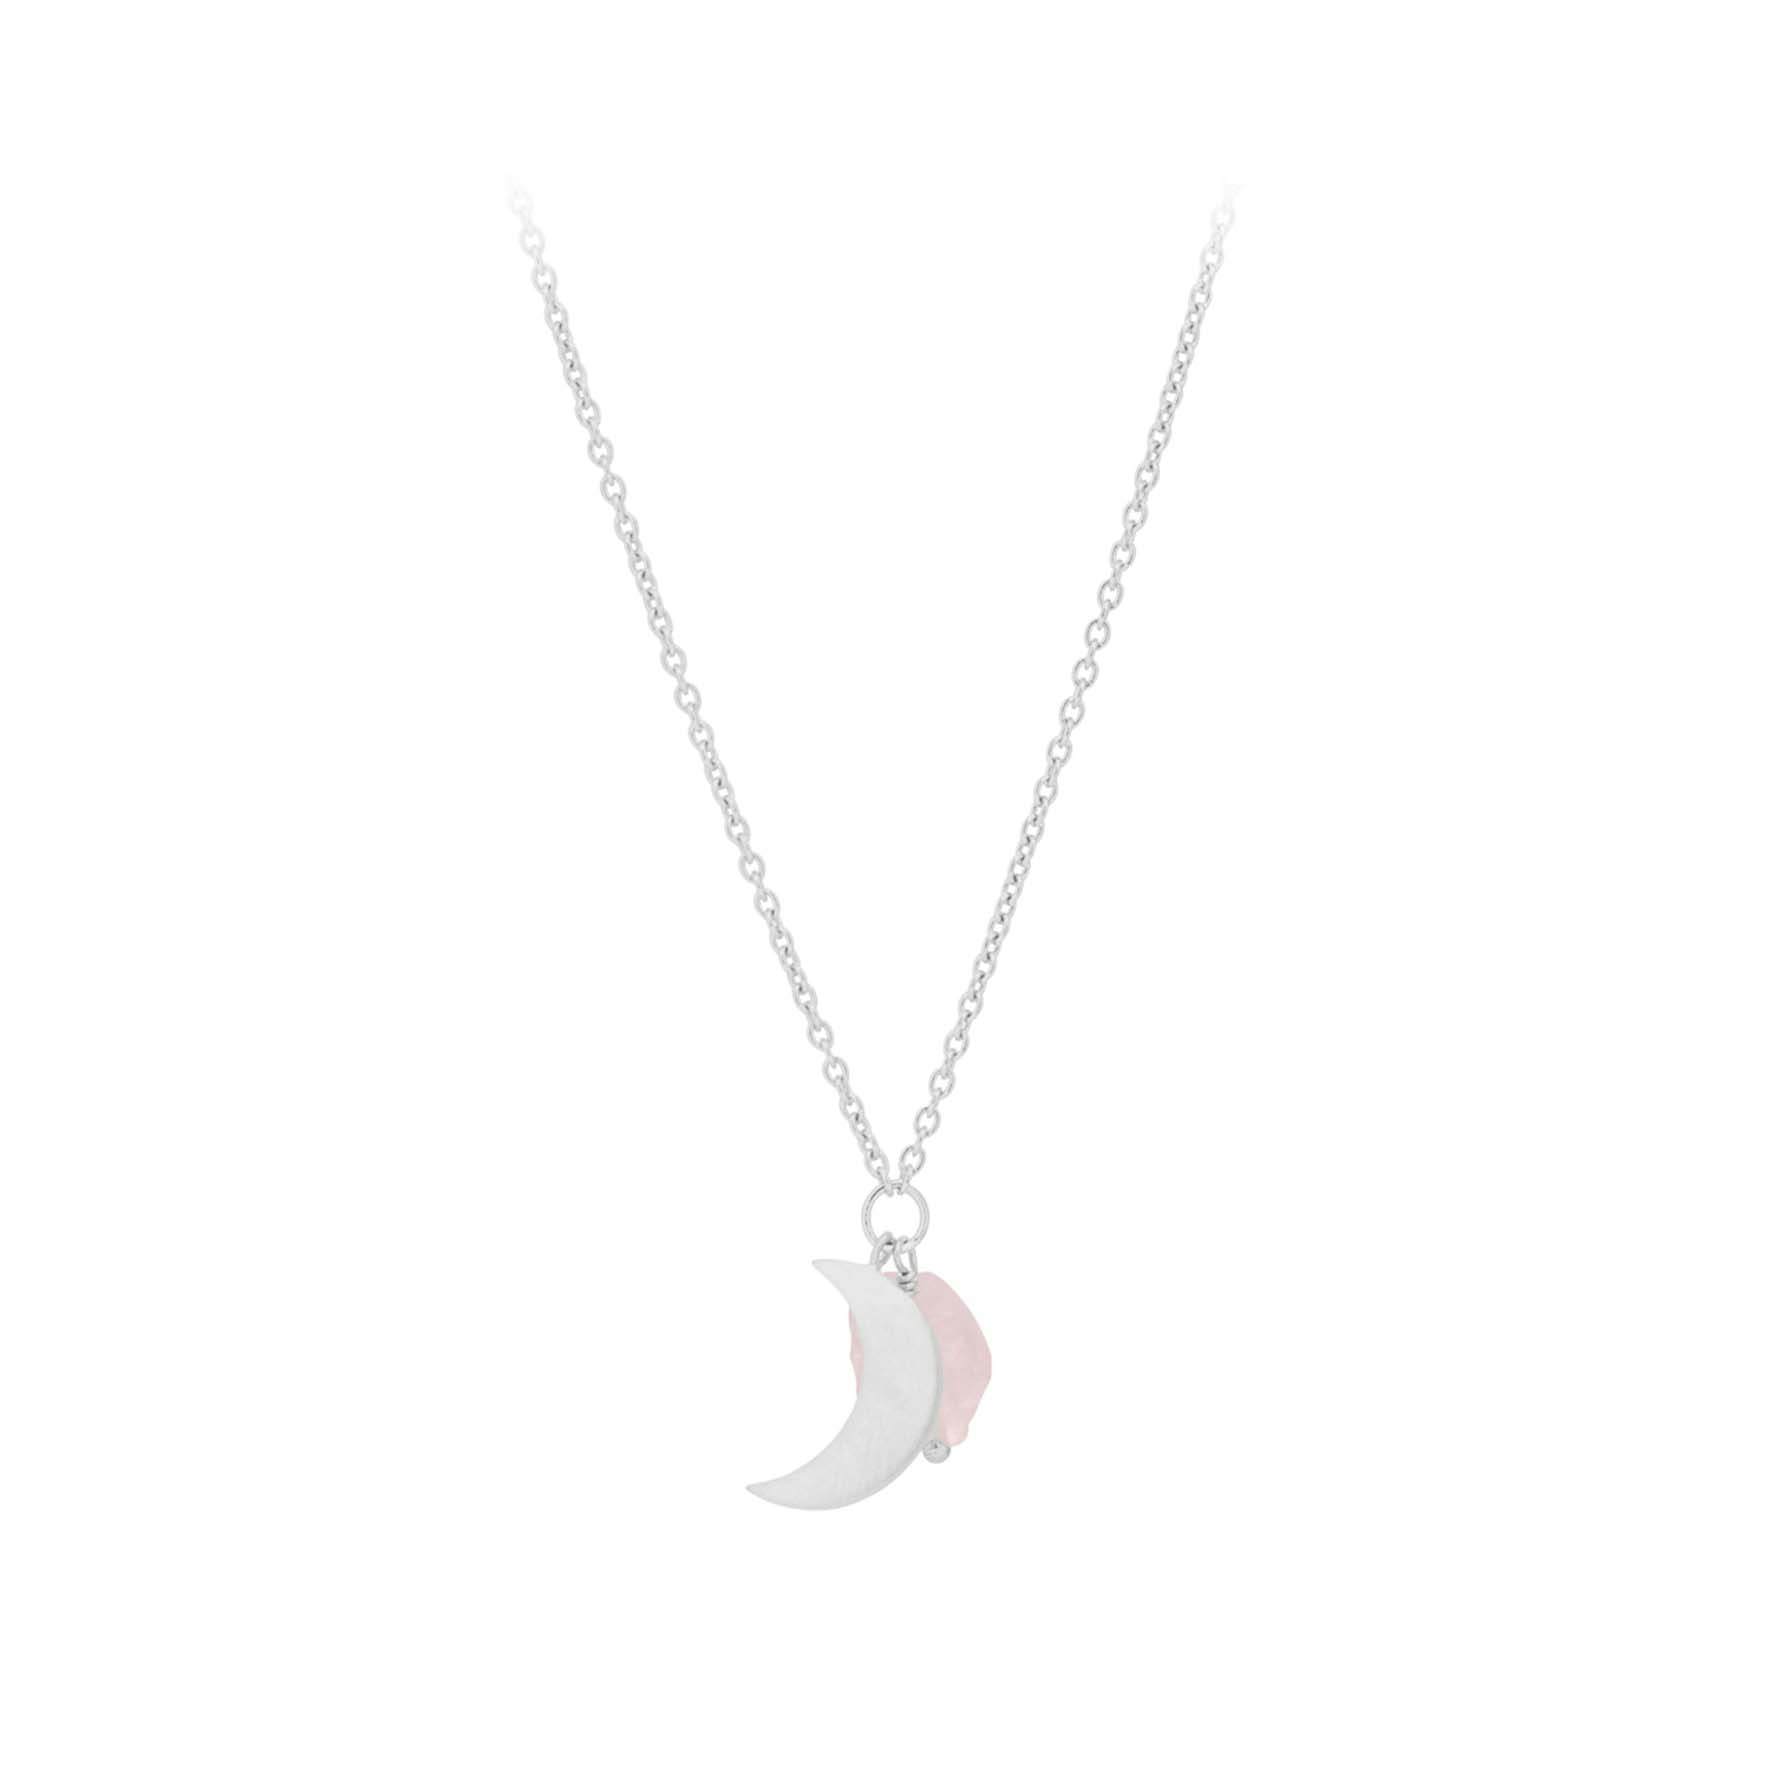 Lunar Orb Necklace fra Pernille Corydon i Sølv Sterling 925